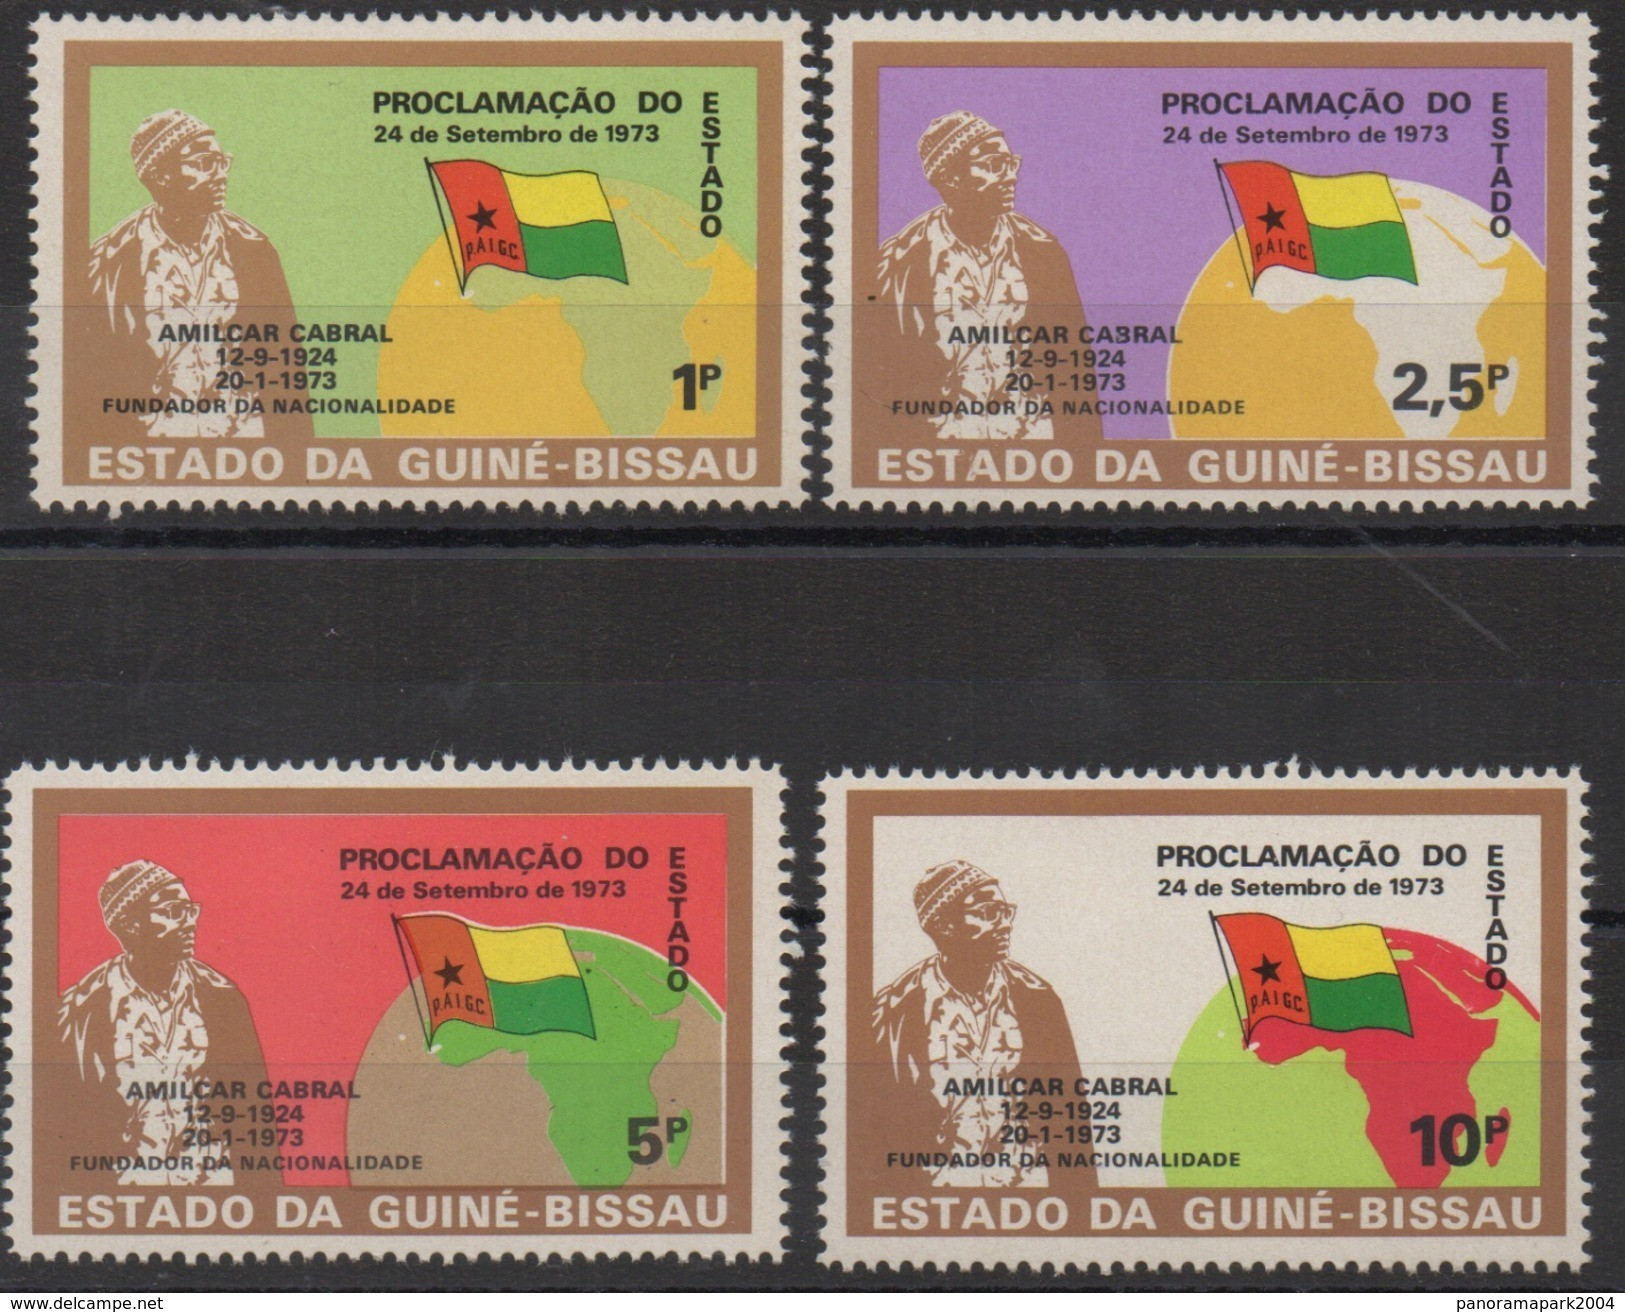 Guiné-Bissau Guinea Guinée Bissau 1973 1974 Mi. 345-348 Republic History Flags Politics Map Karte Flagge Fahne Drapeau - Geographie